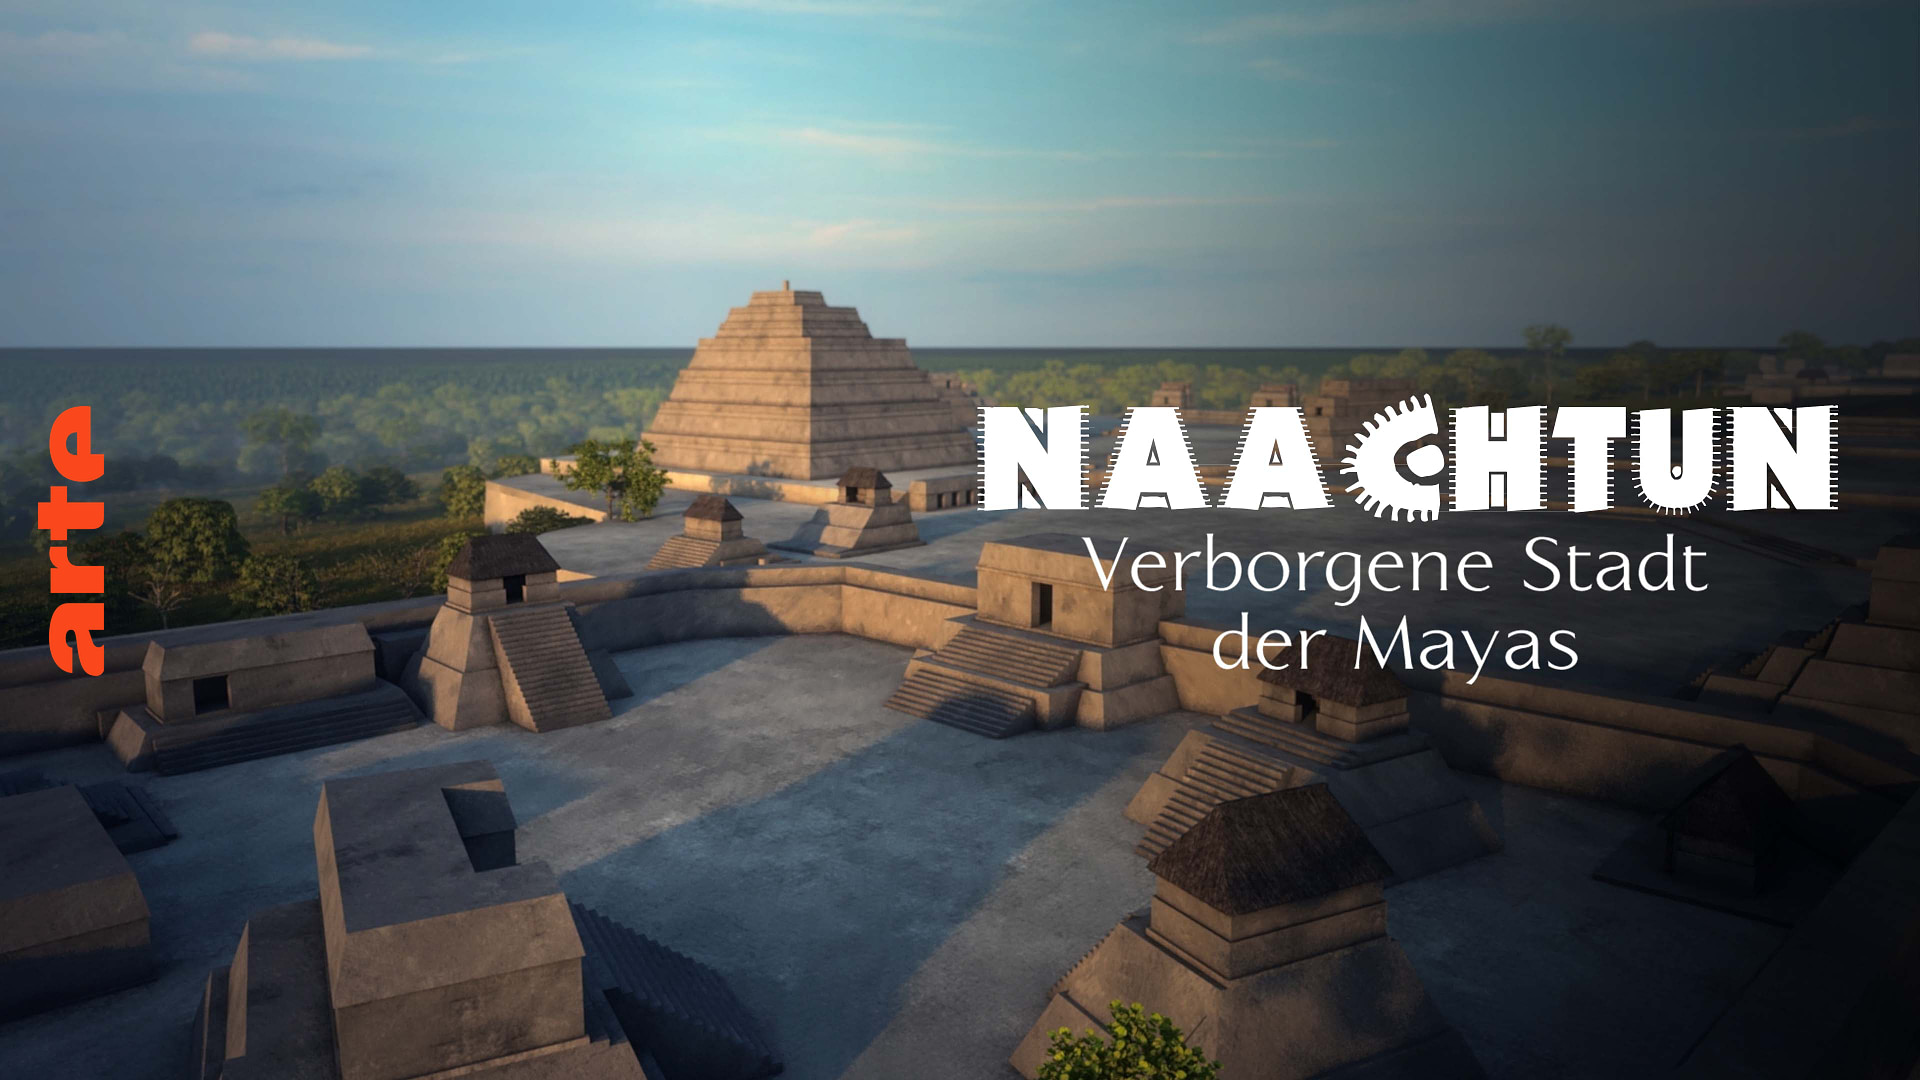 Naachtun - Verborgene Stadt der Mayas